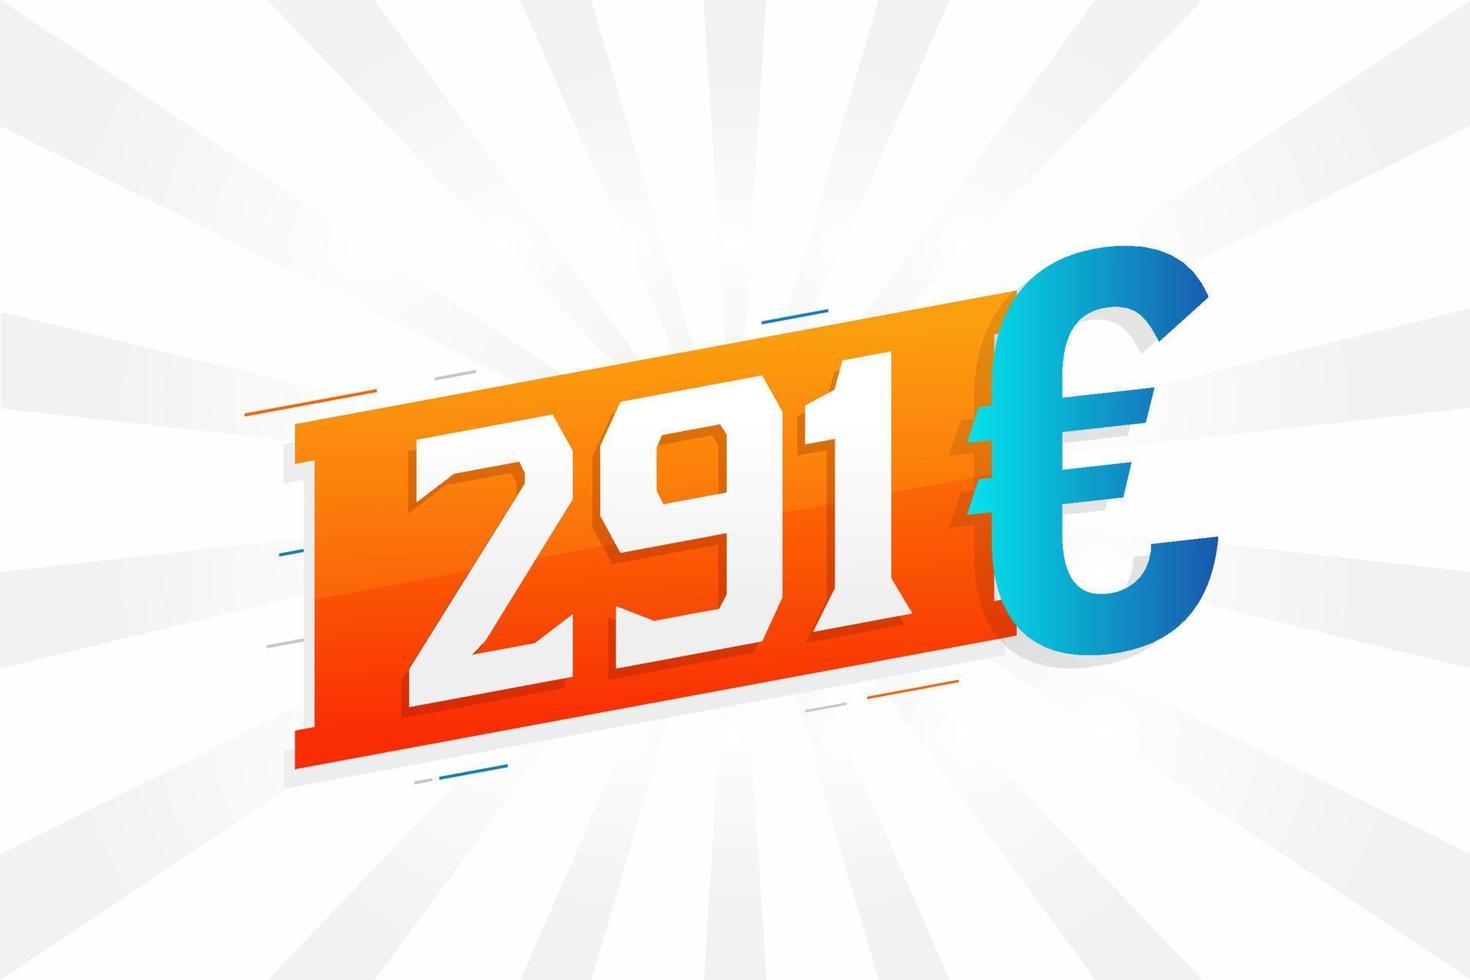 291 Euro moneta vettore testo simbolo. 291 Euro europeo unione i soldi azione vettore